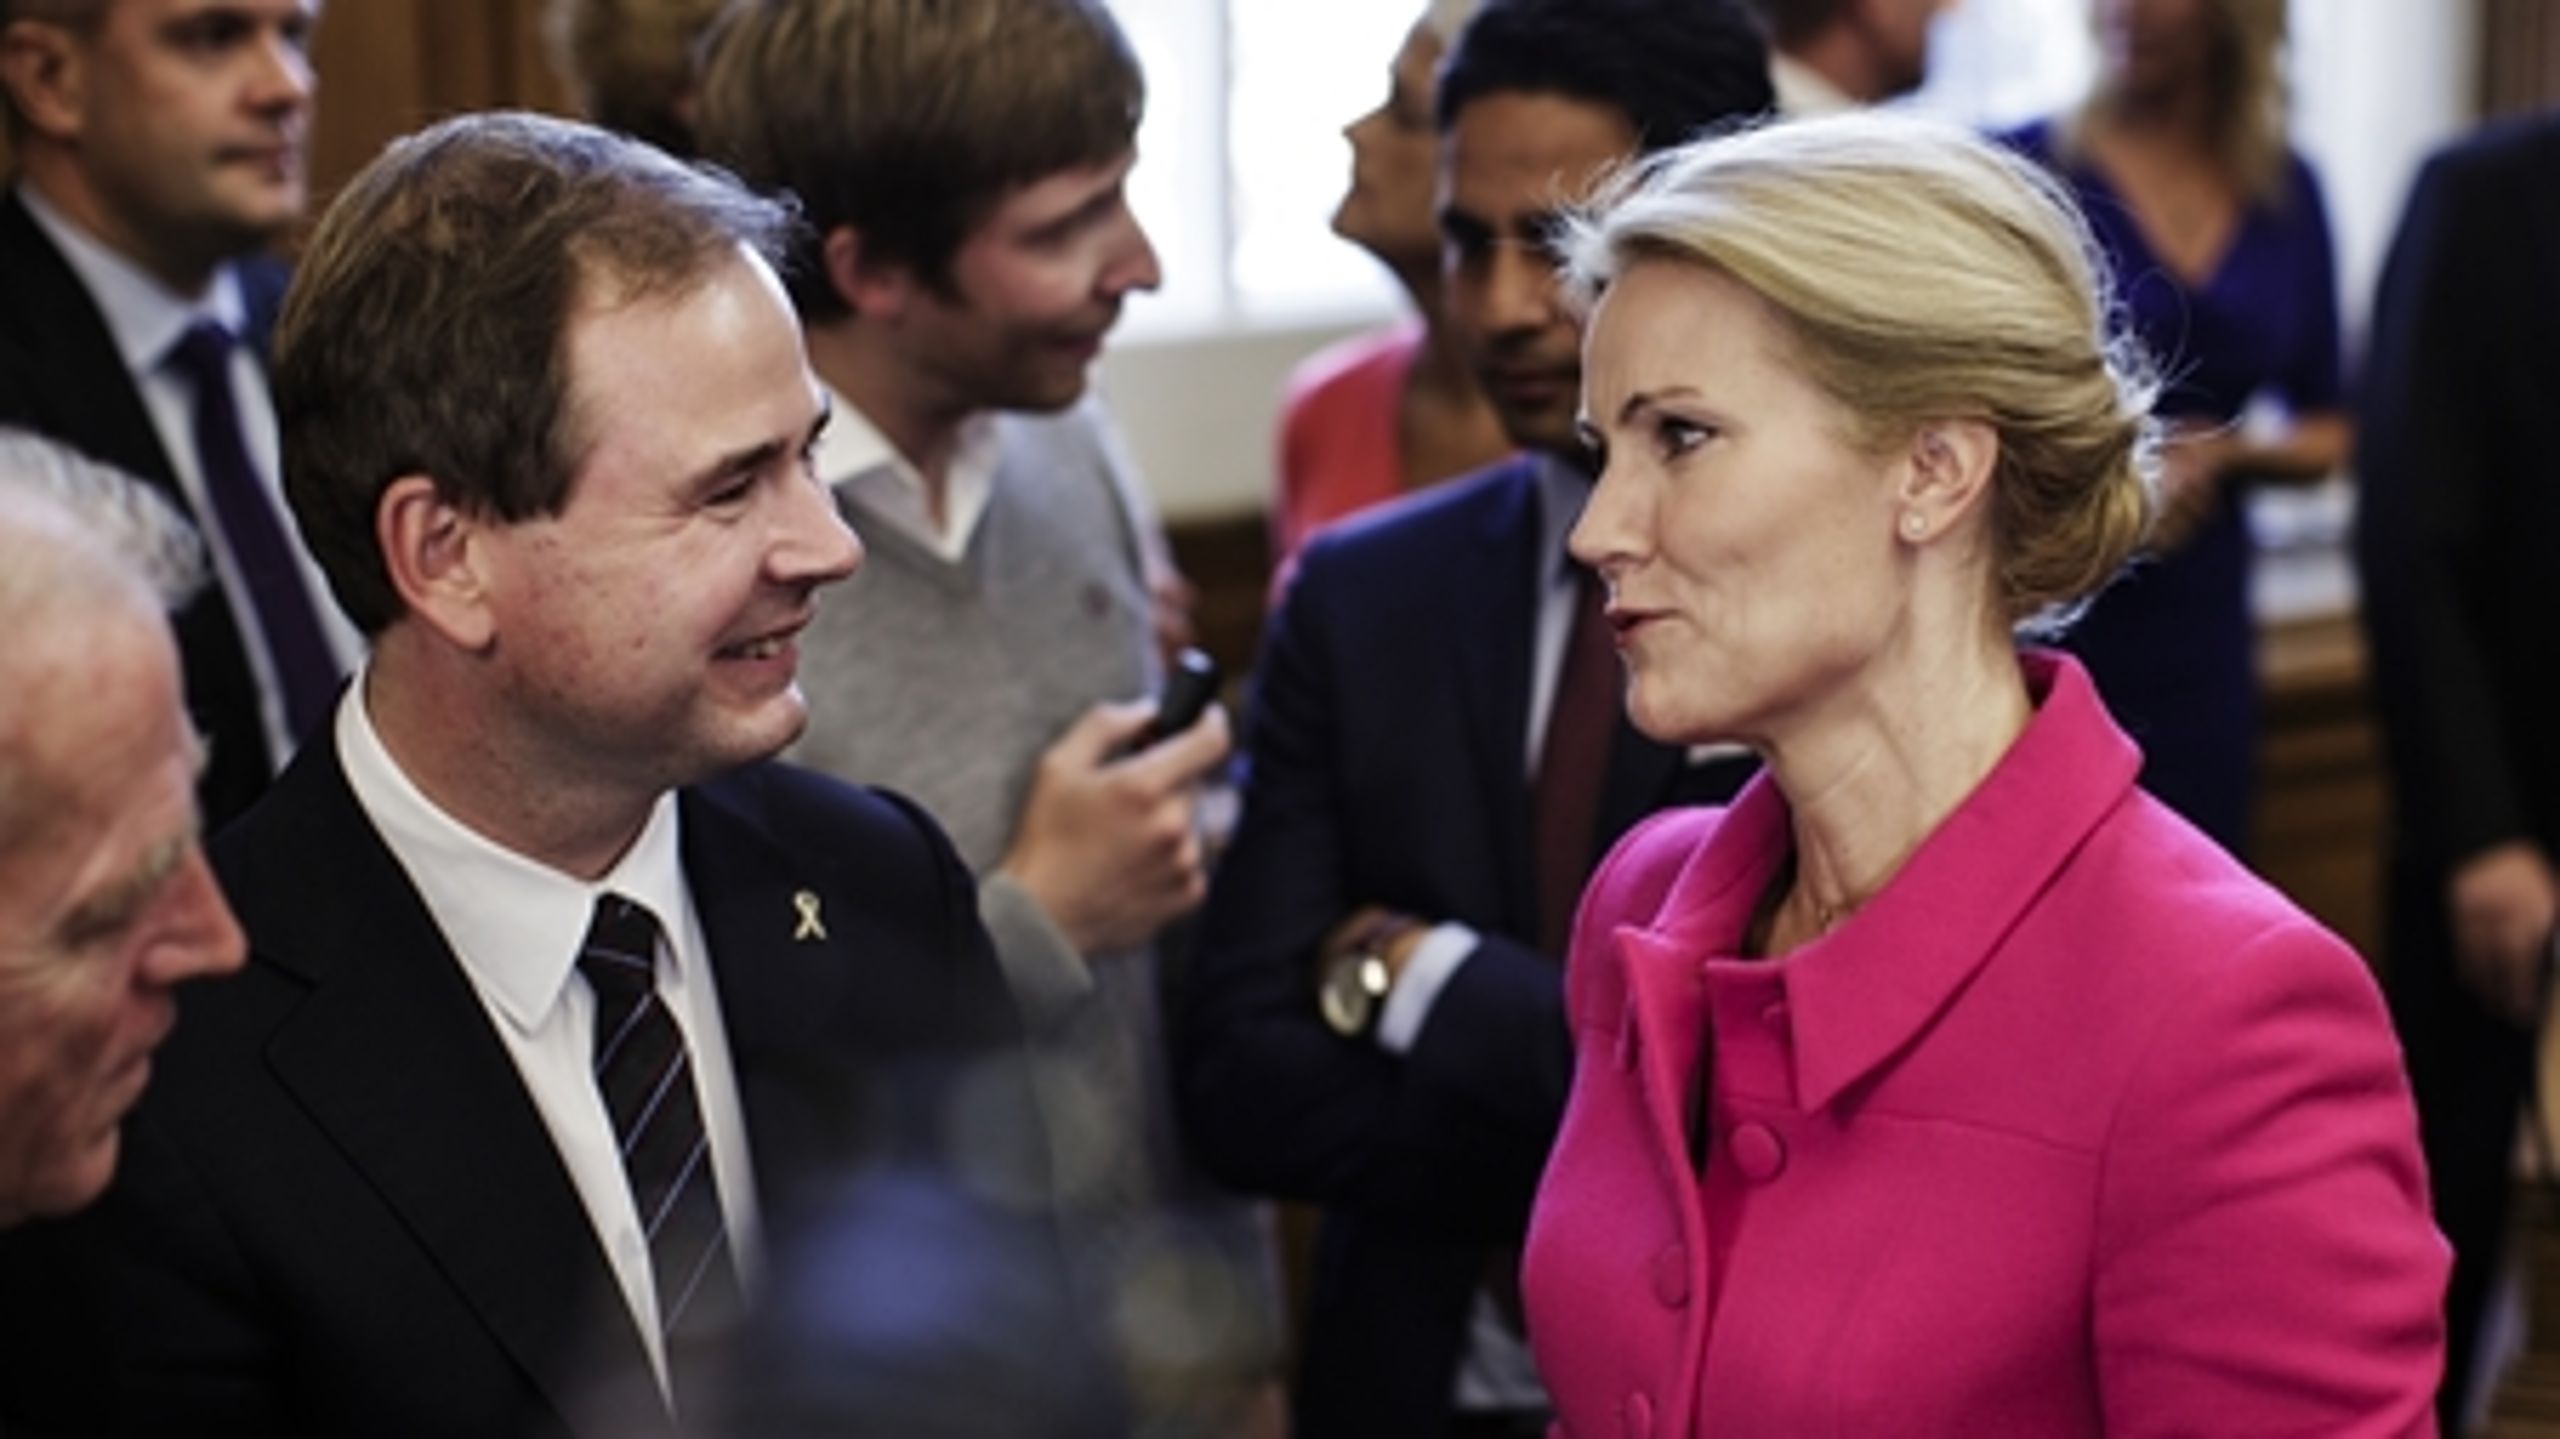 Statsminister Helle Thorning-Schmidt kom ind i kampen igen, fordi dagpengesagen blev fjernet fra dagsordenen, og Løkke klokkede i det. Men hendes chancer for at vinde næste valg er stadig små.